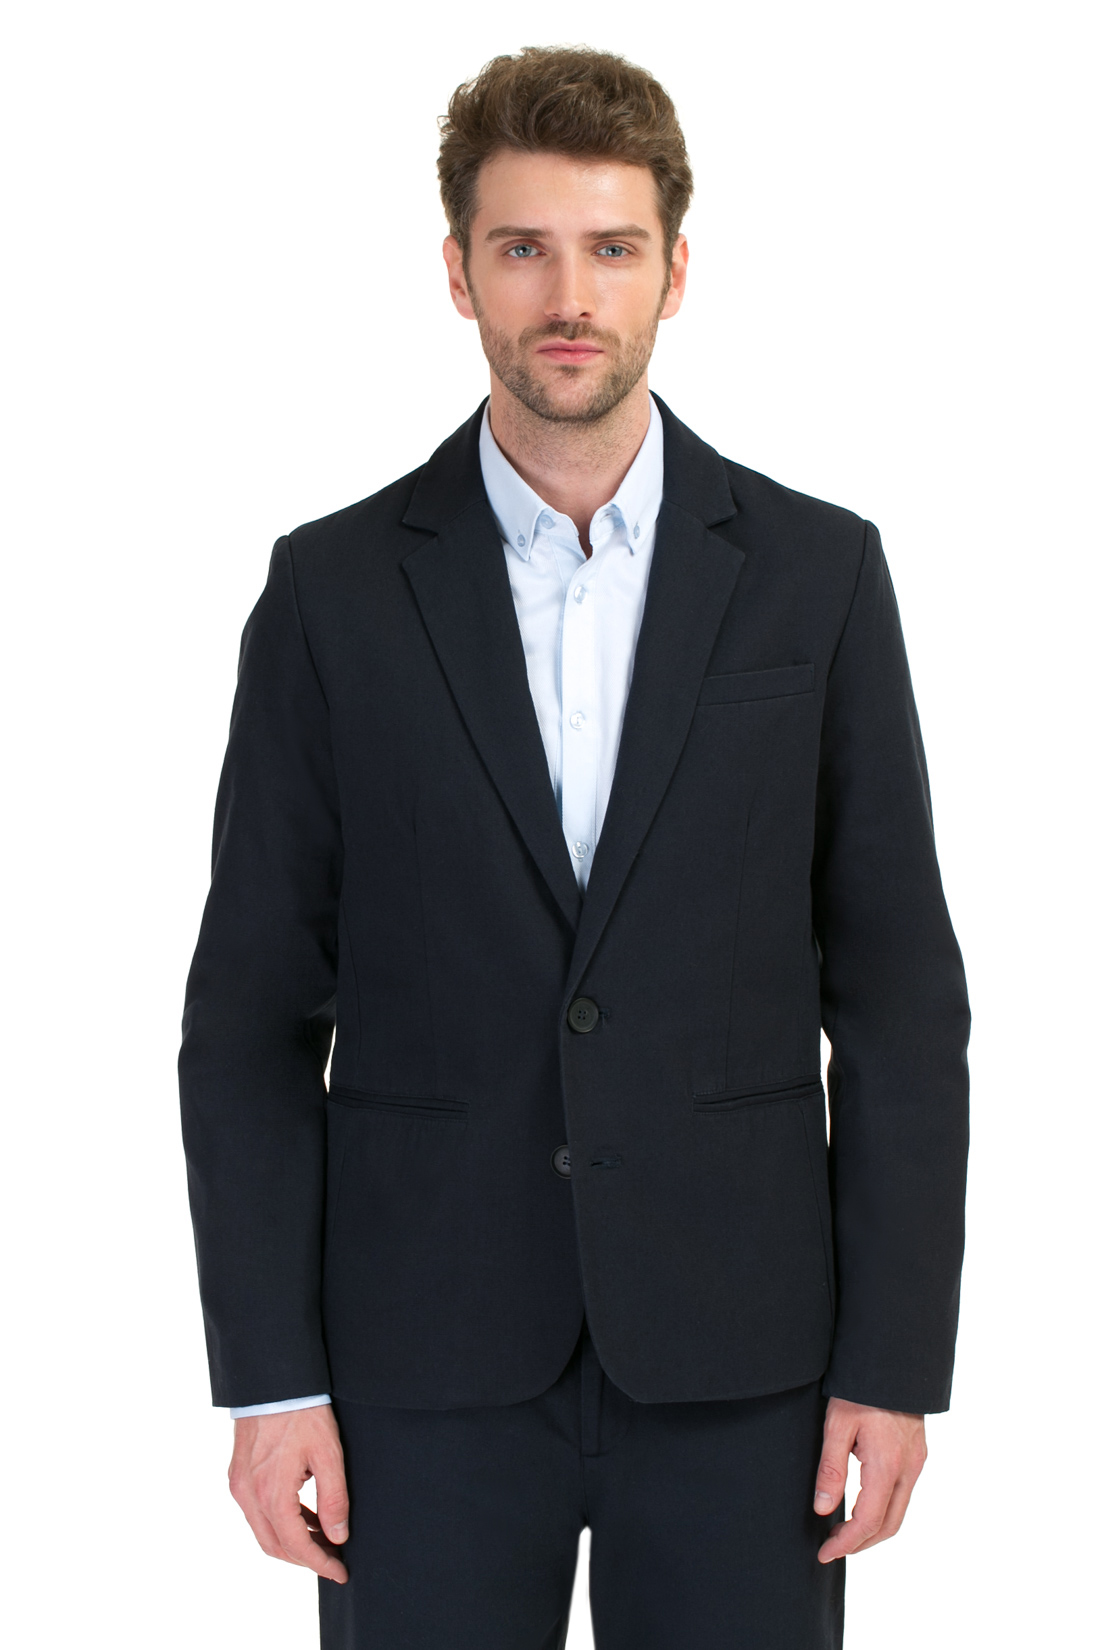 Деловой пиджак (арт. baon B627001), размер XXL, цвет синий Деловой пиджак (арт. baon B627001) - фото 1